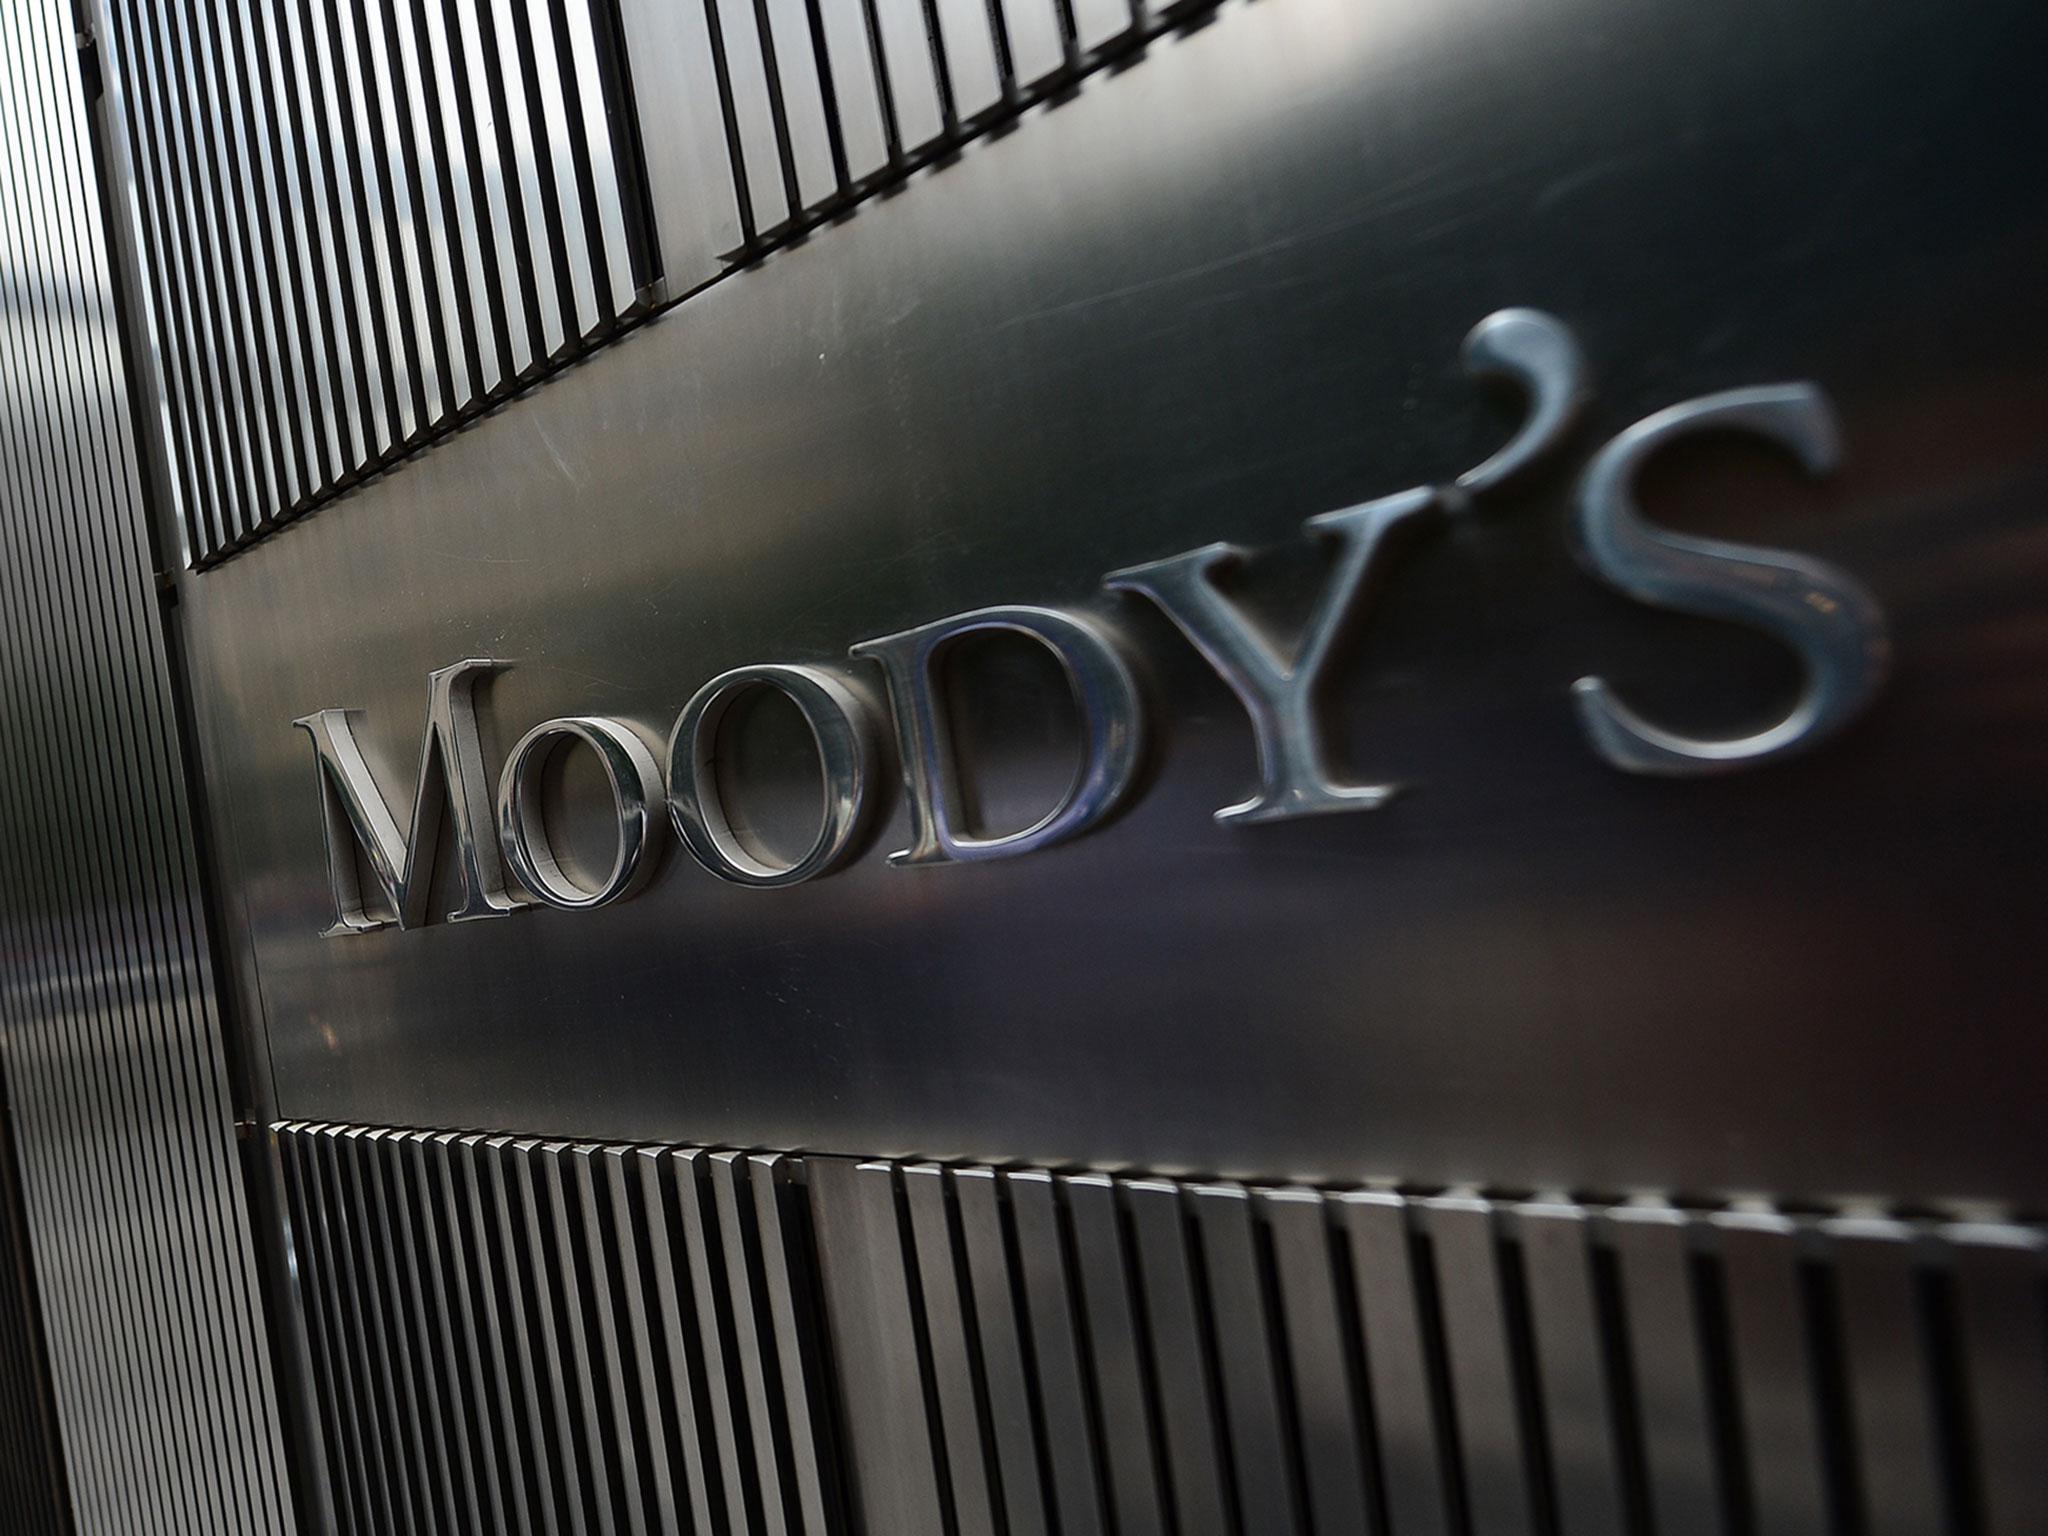 Prvi put u 10 godina: Moody's poboljšao izglede za hrvatski kreditni rejting na stabilne